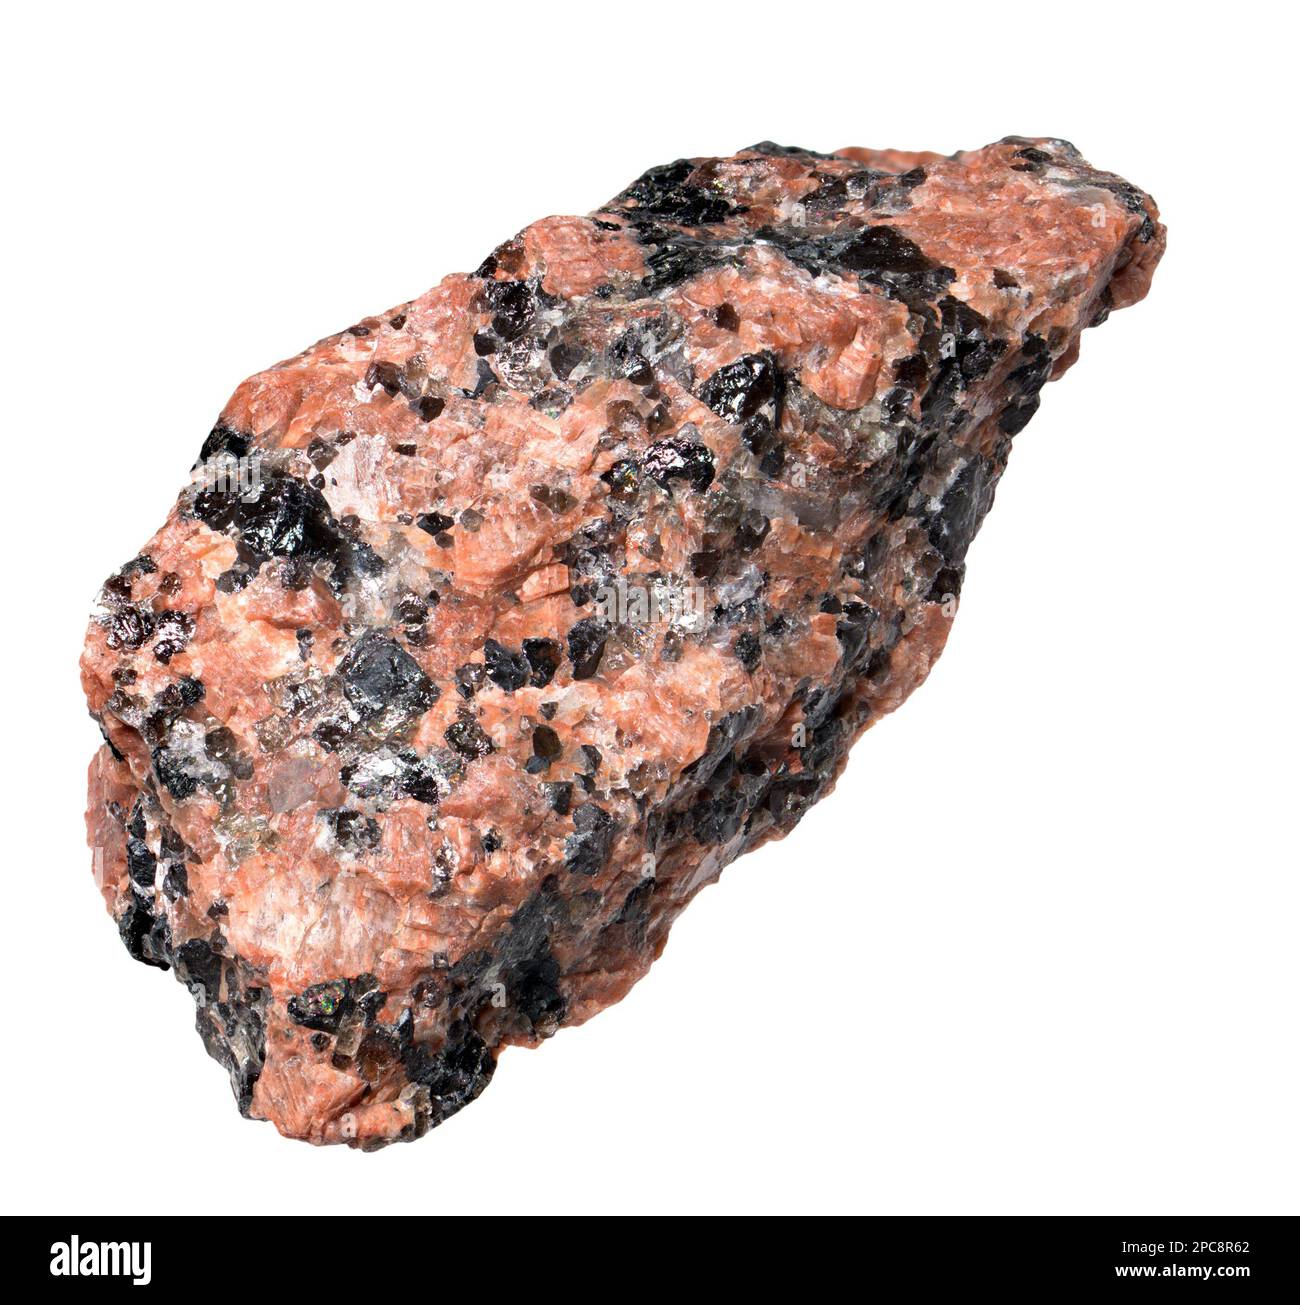 Granodiorit (Norwegen), phaneritisch strukturiertes, intrusives, igneöses Gestein ähnlich wie Granit, enthält jedoch mehr Plagioclase-Feldspat als Orthoclase-Feldspat Stockfoto